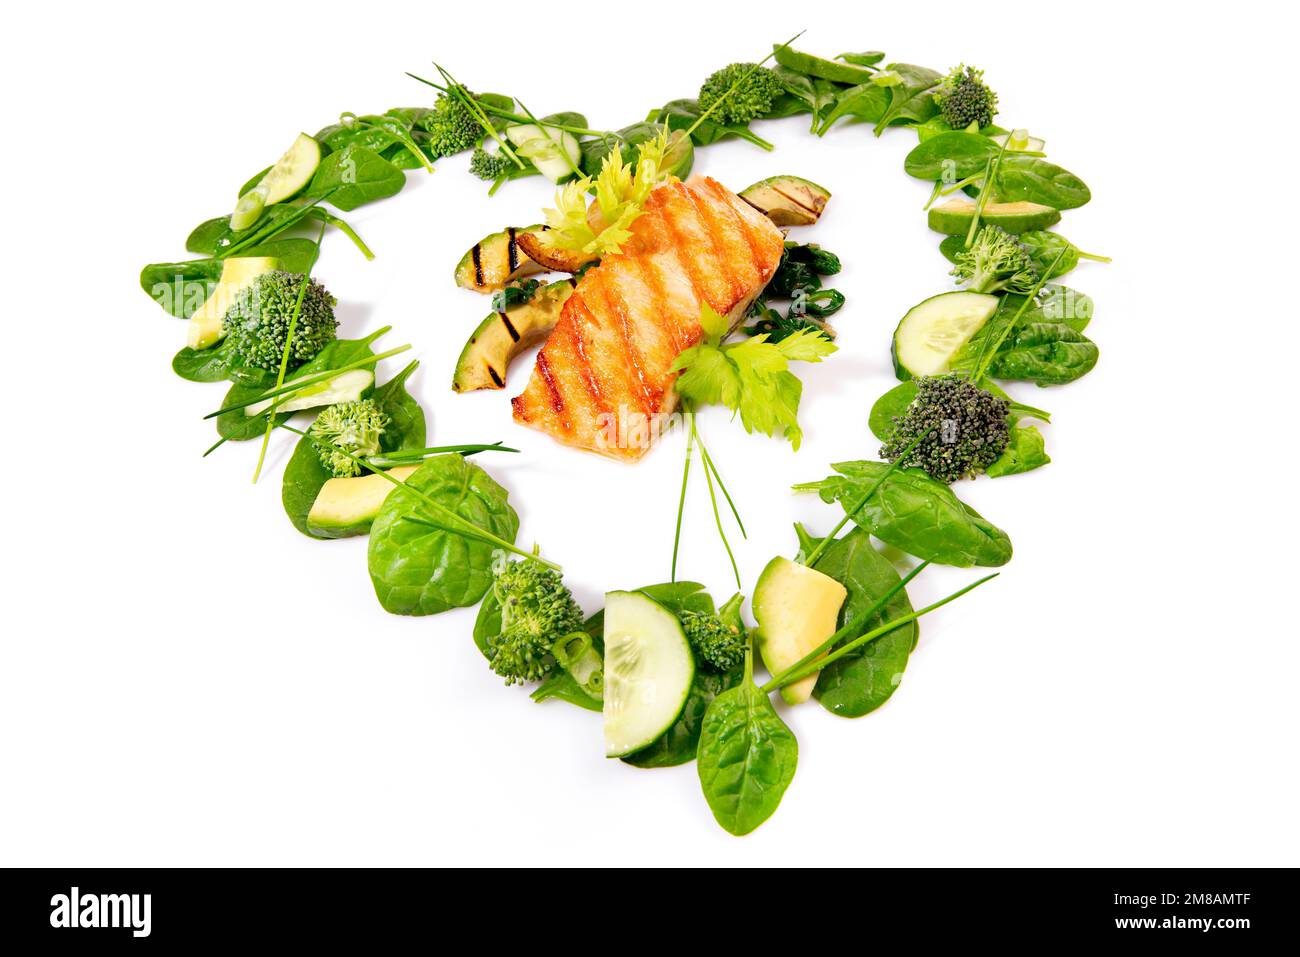 Salade verte en forme de coeur et légumes avec saumon grillé isolé sur fond blanc Banque D'Images